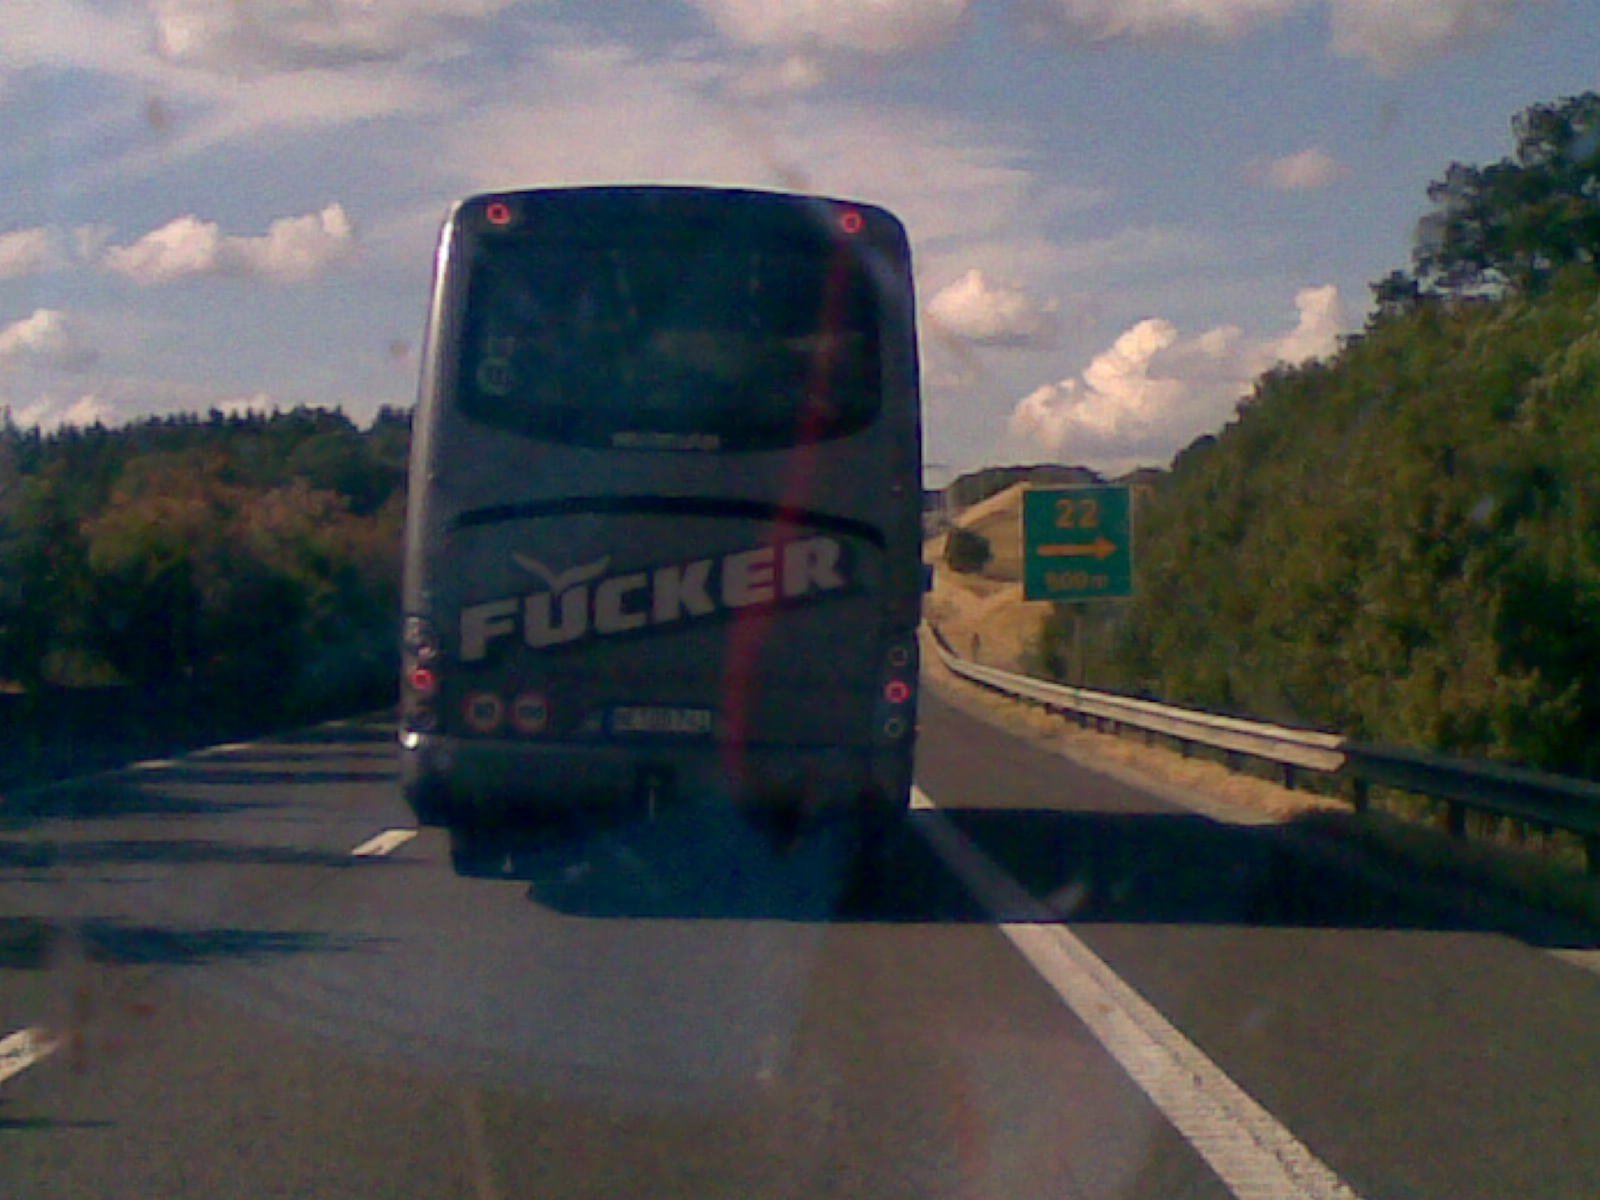 "Fucker" bus company